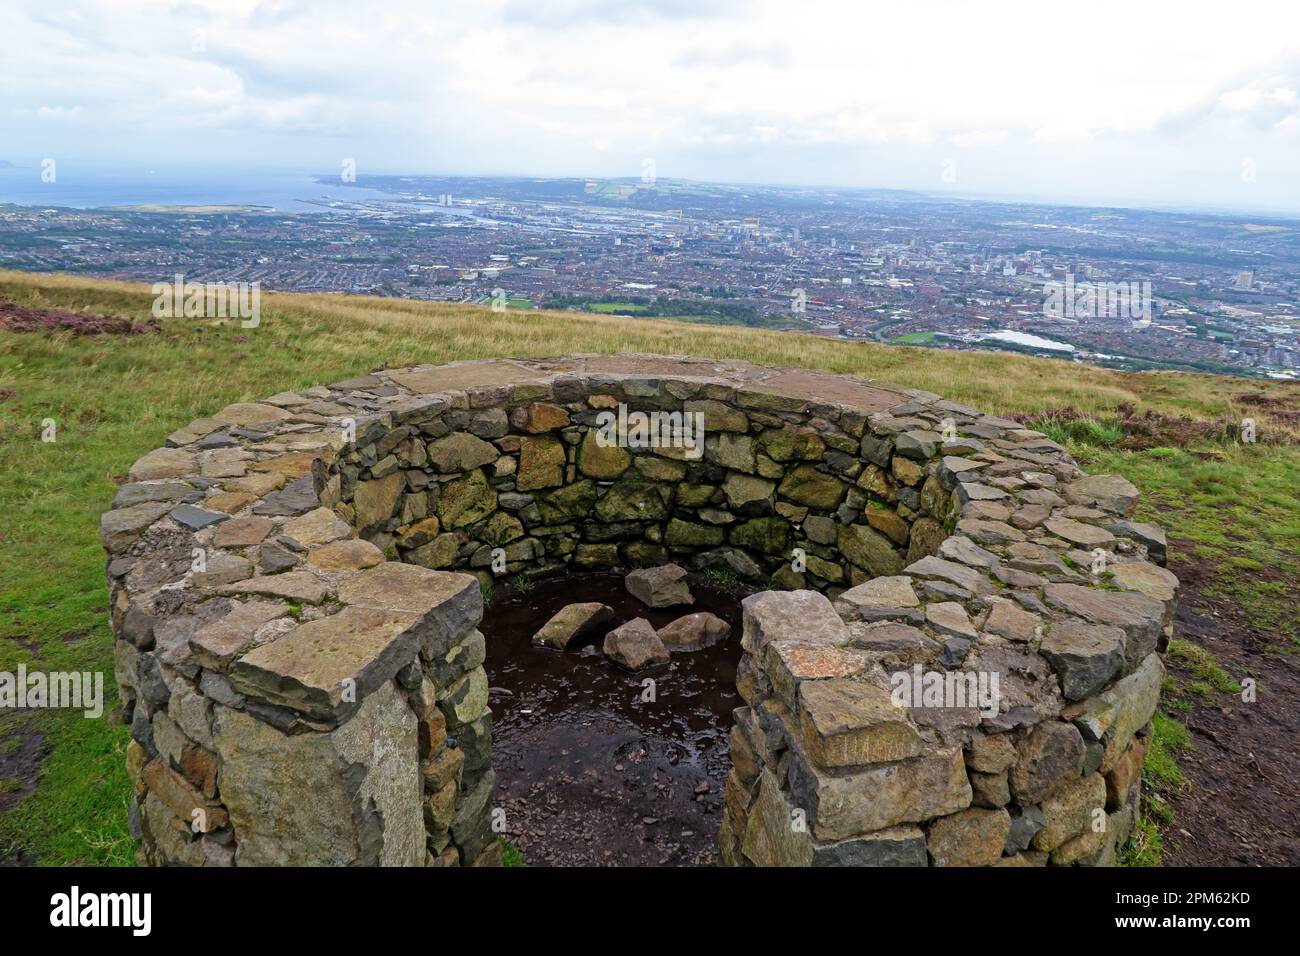 Divis Black Mountain / Dubhais - point de vue basalte au sommet, vue sur la ville de Belfast, Irlande du Nord, Royaume-Uni, BT17 0NG Banque D'Images